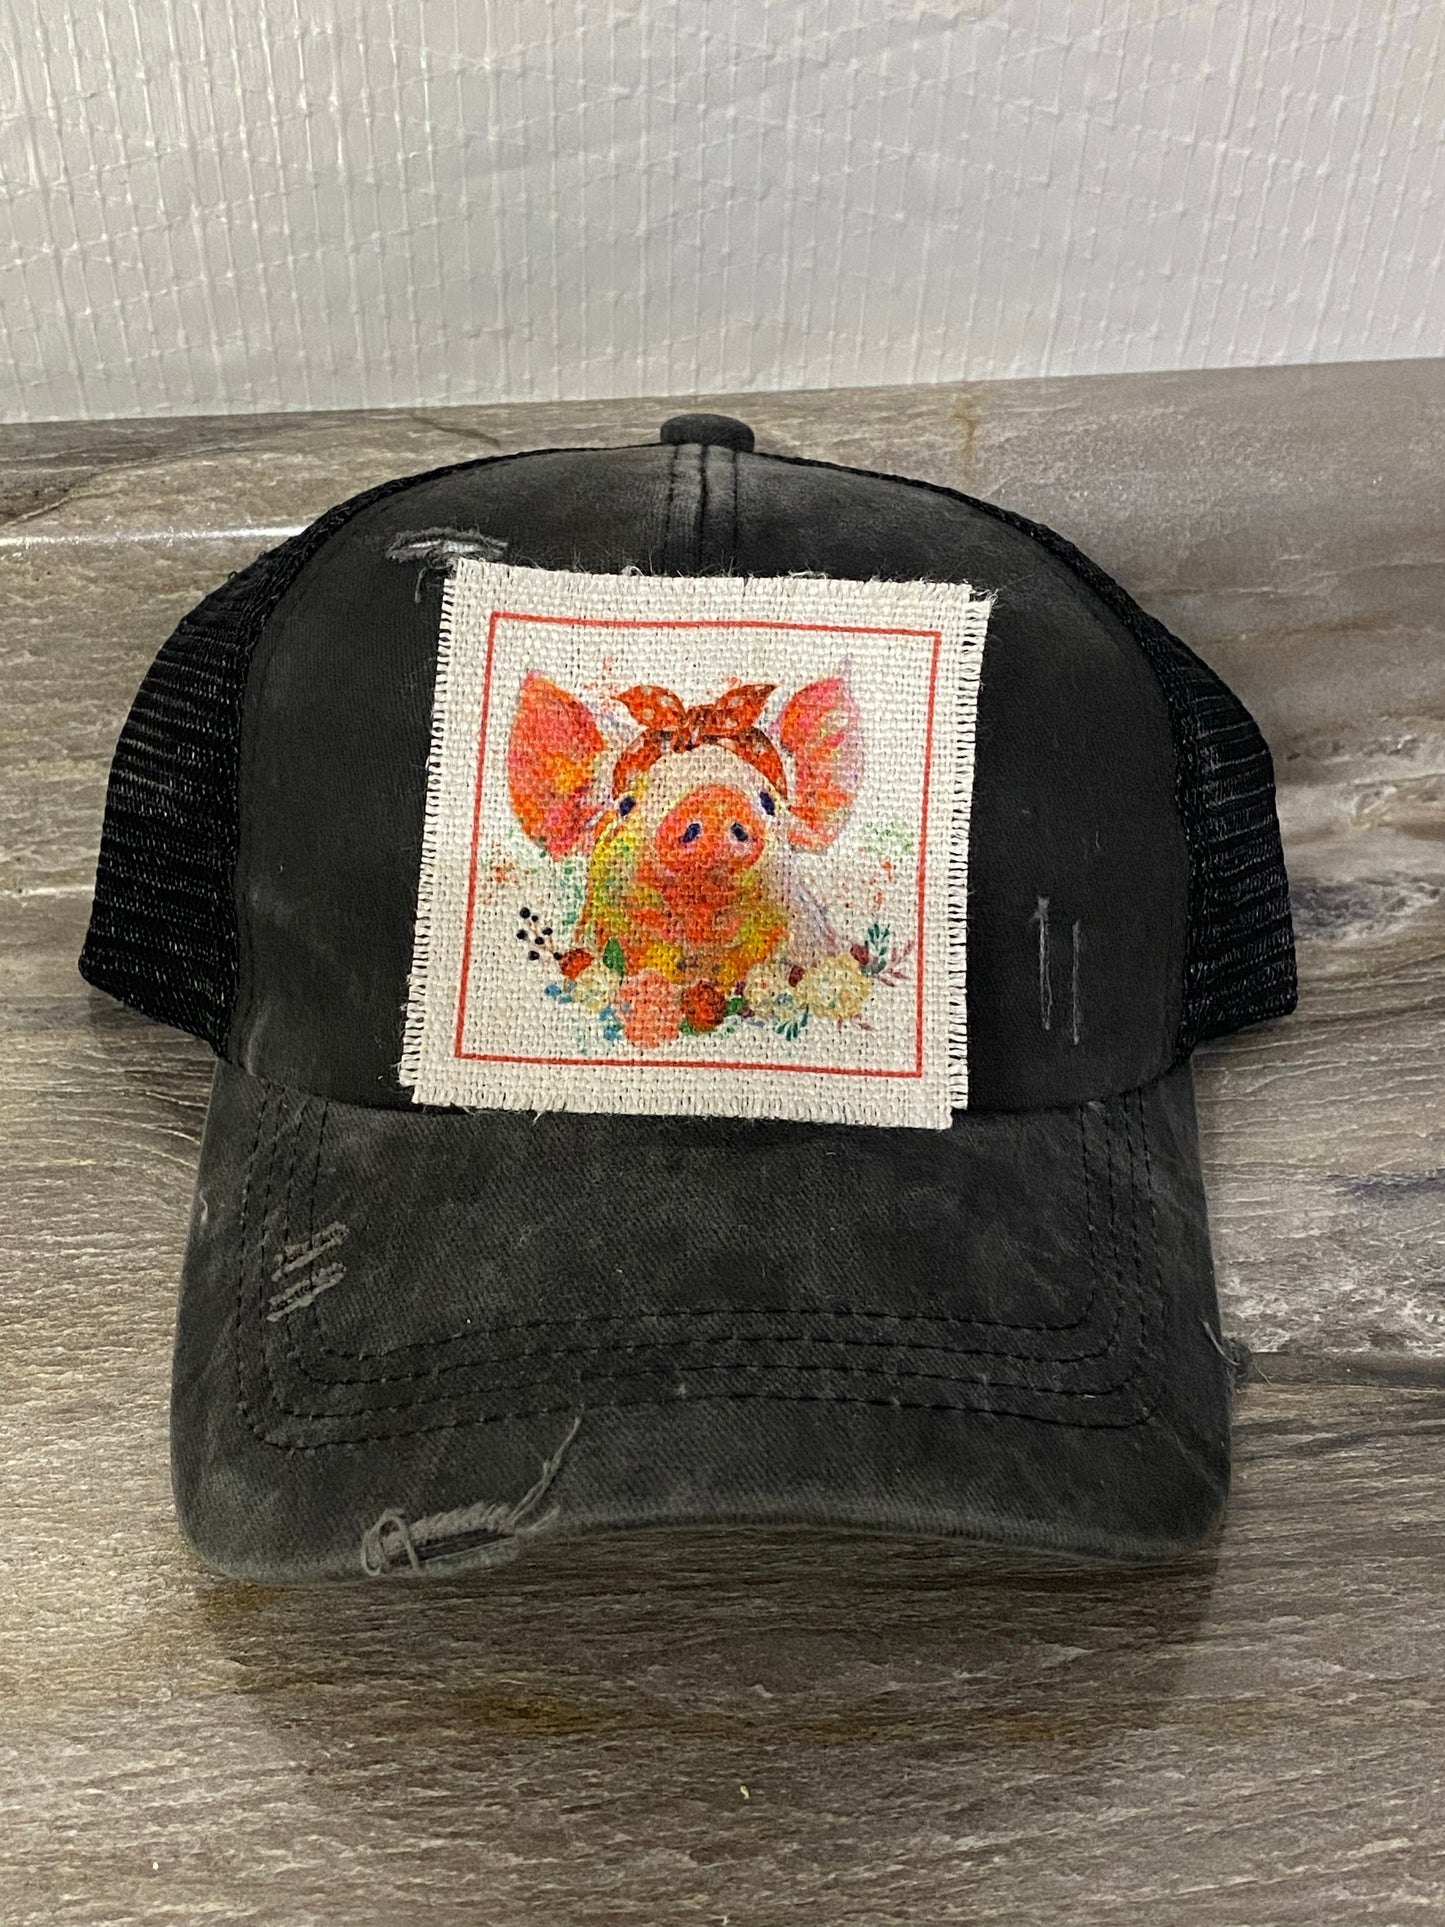 Floral Pig Hat Patch